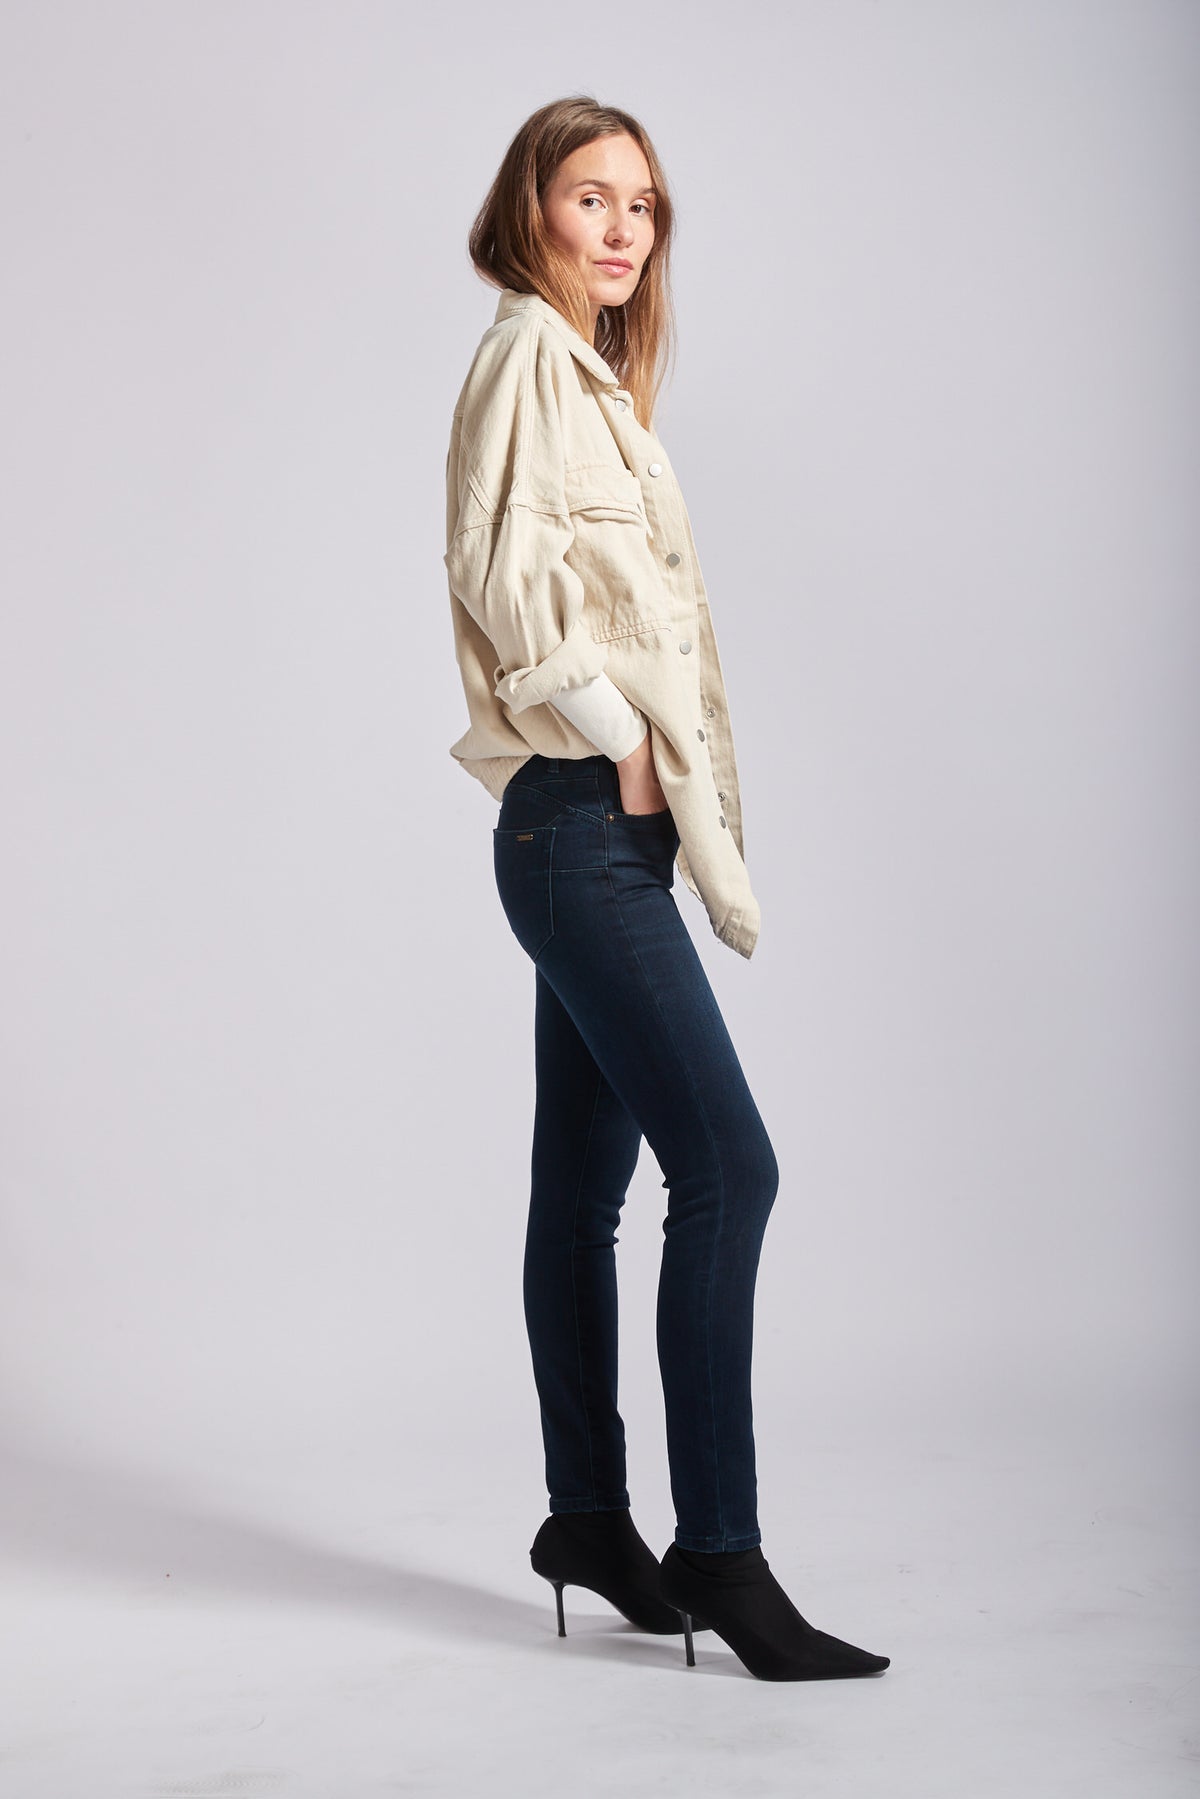 Molletoned interieur jeans - Kim